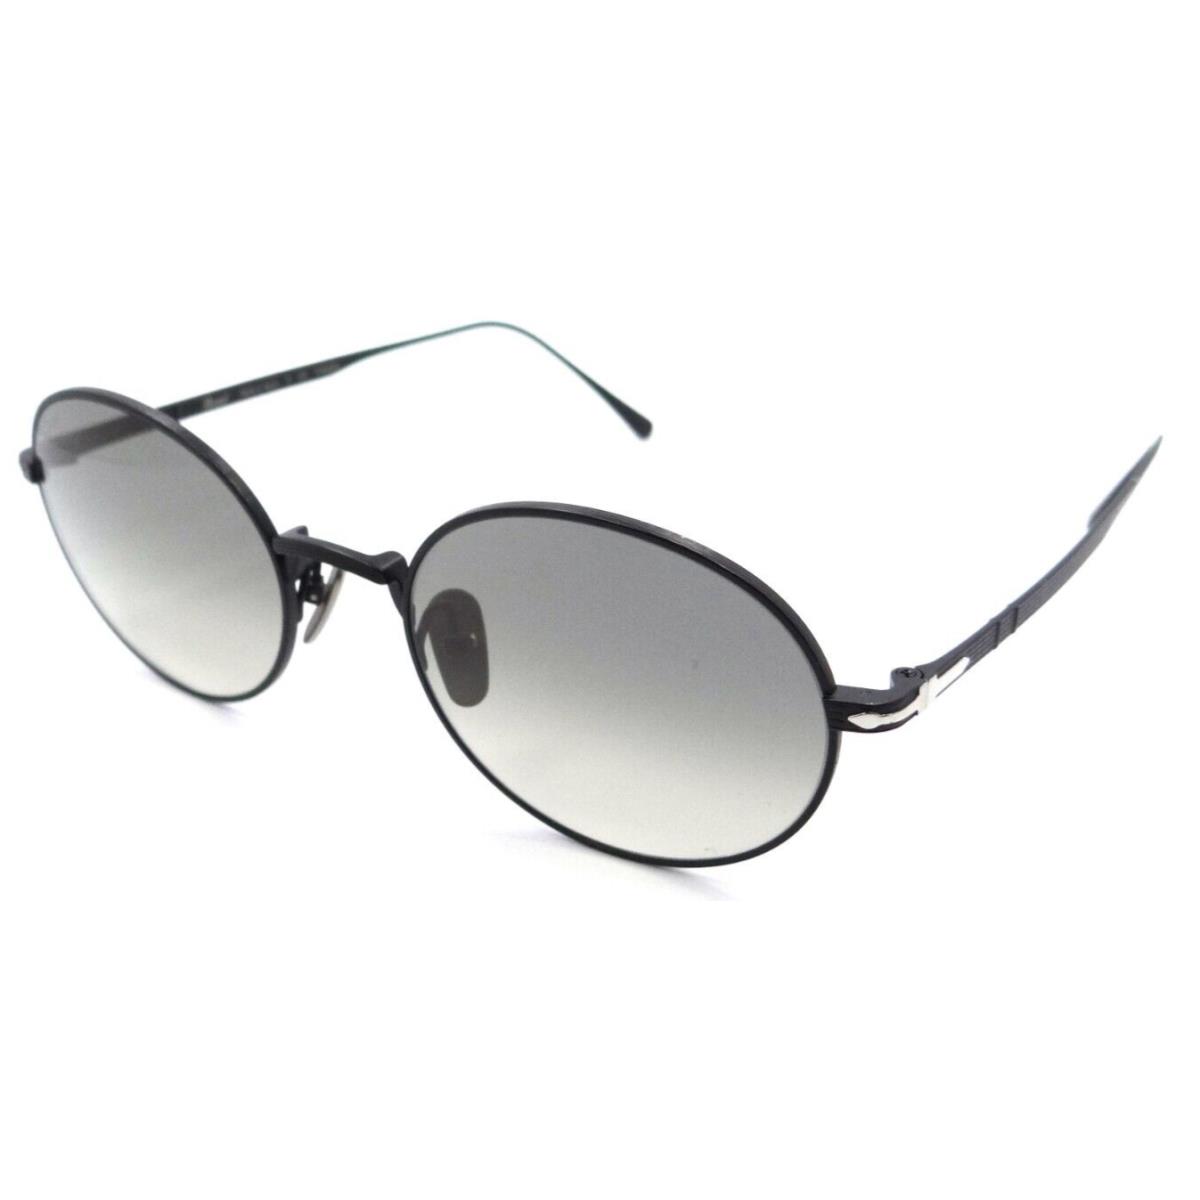 Persol Sunglasses PO 5001ST 8004/32 51-20-145 Matte Black / Grey Gradient Japan